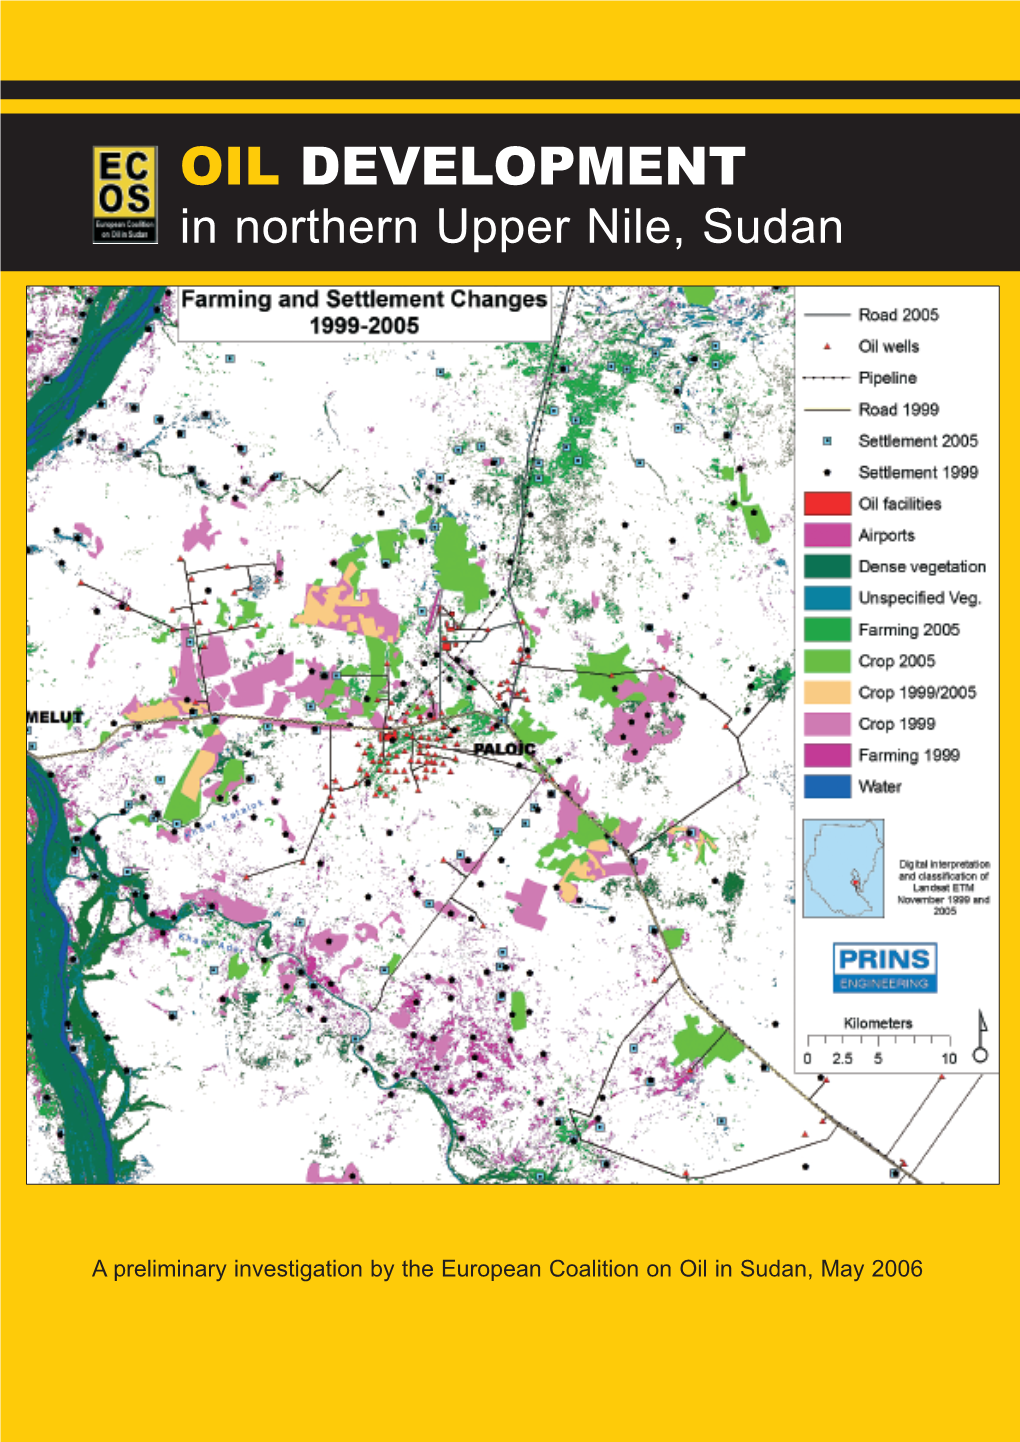 OIL DEVELOPMENT in Northern Upper Nile, Sudan